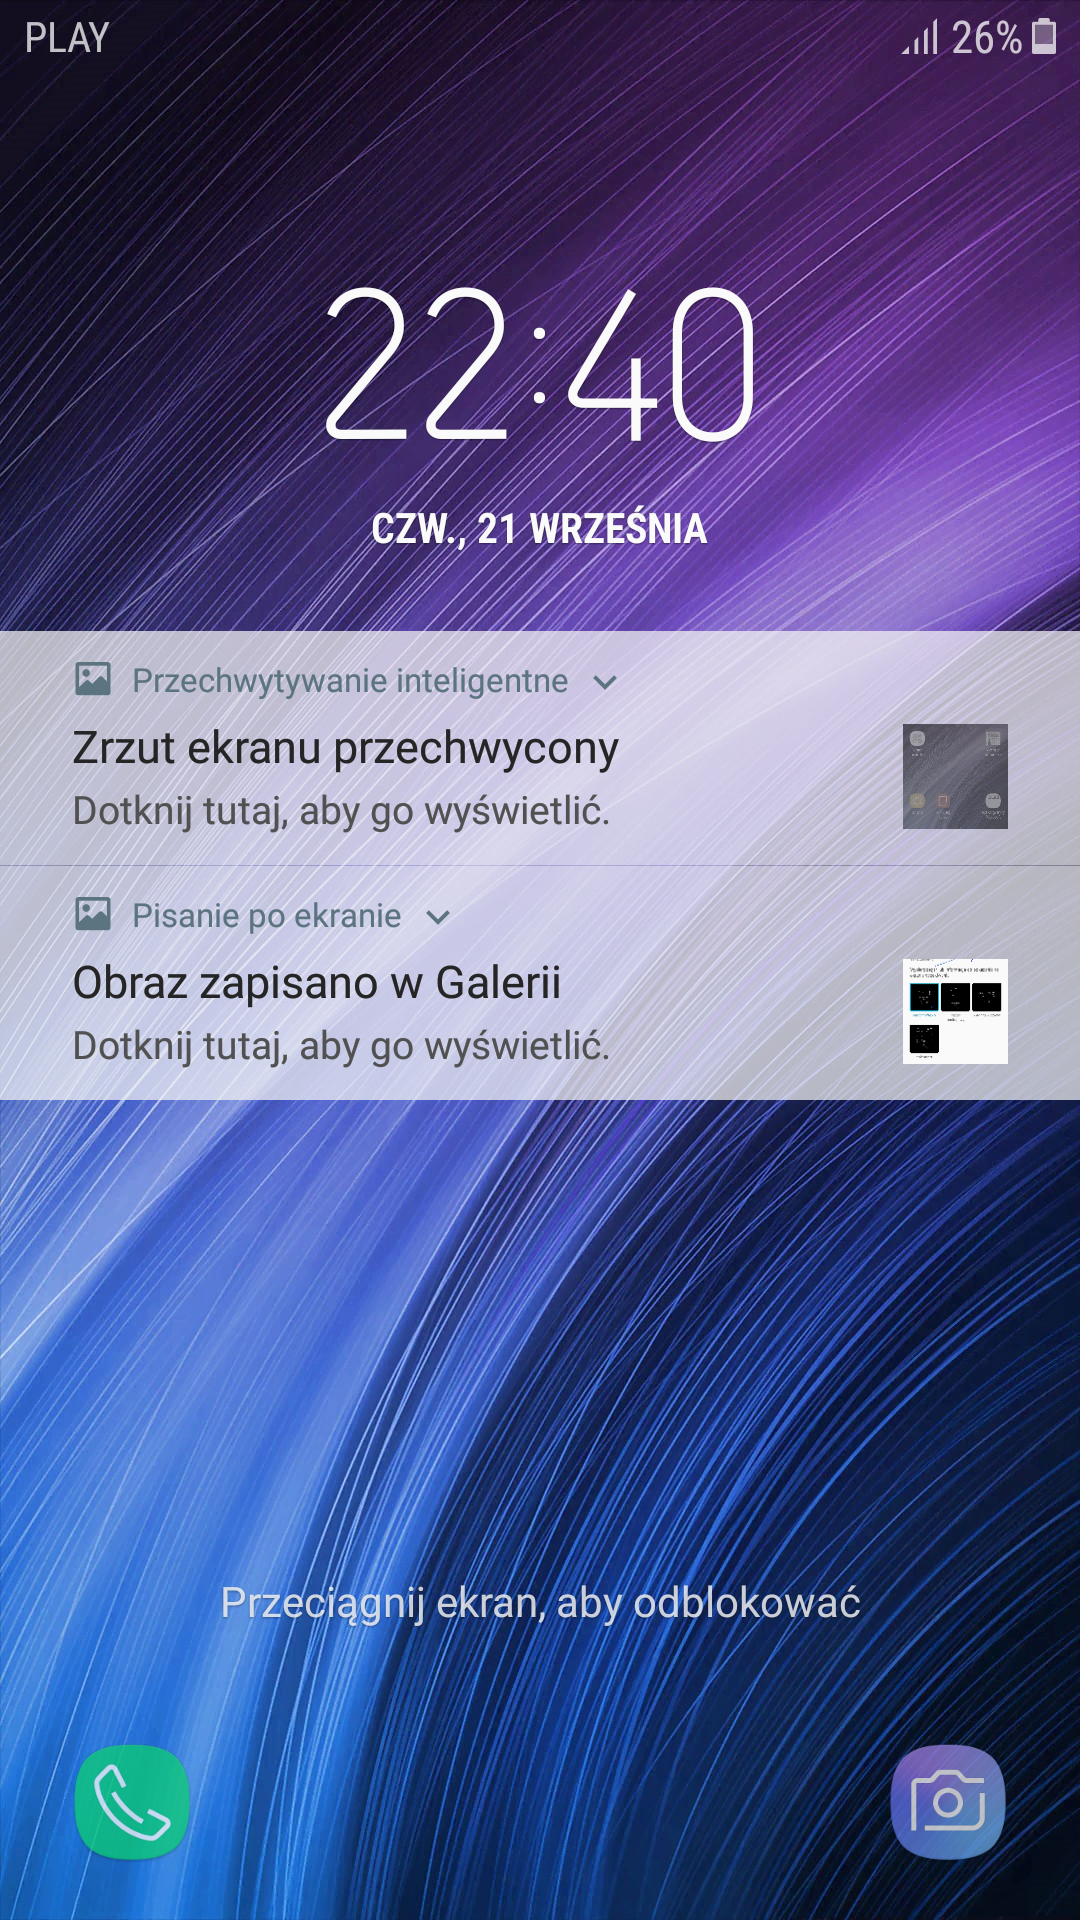 Ounce Conversational Ciro Ekran blokady - jak zmienić sposób wyświetlania zegara - Forum  Android.com.pl - dyskutujemy o technologii